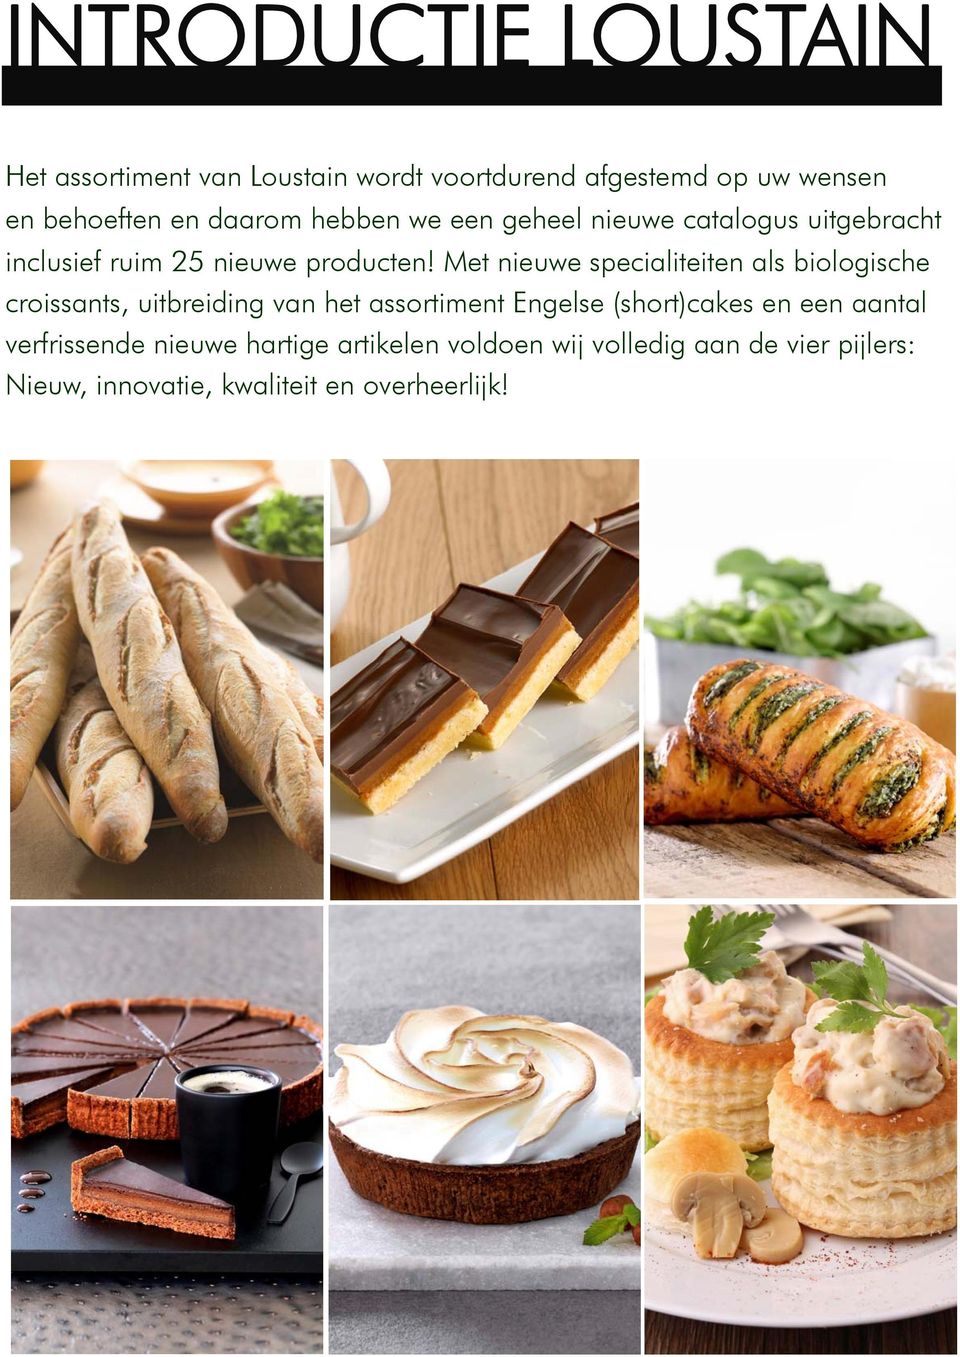 Met nieuwe specialiteiten als biologische croissants, uitbreiding van het assortiment Engelse (short)cakes en